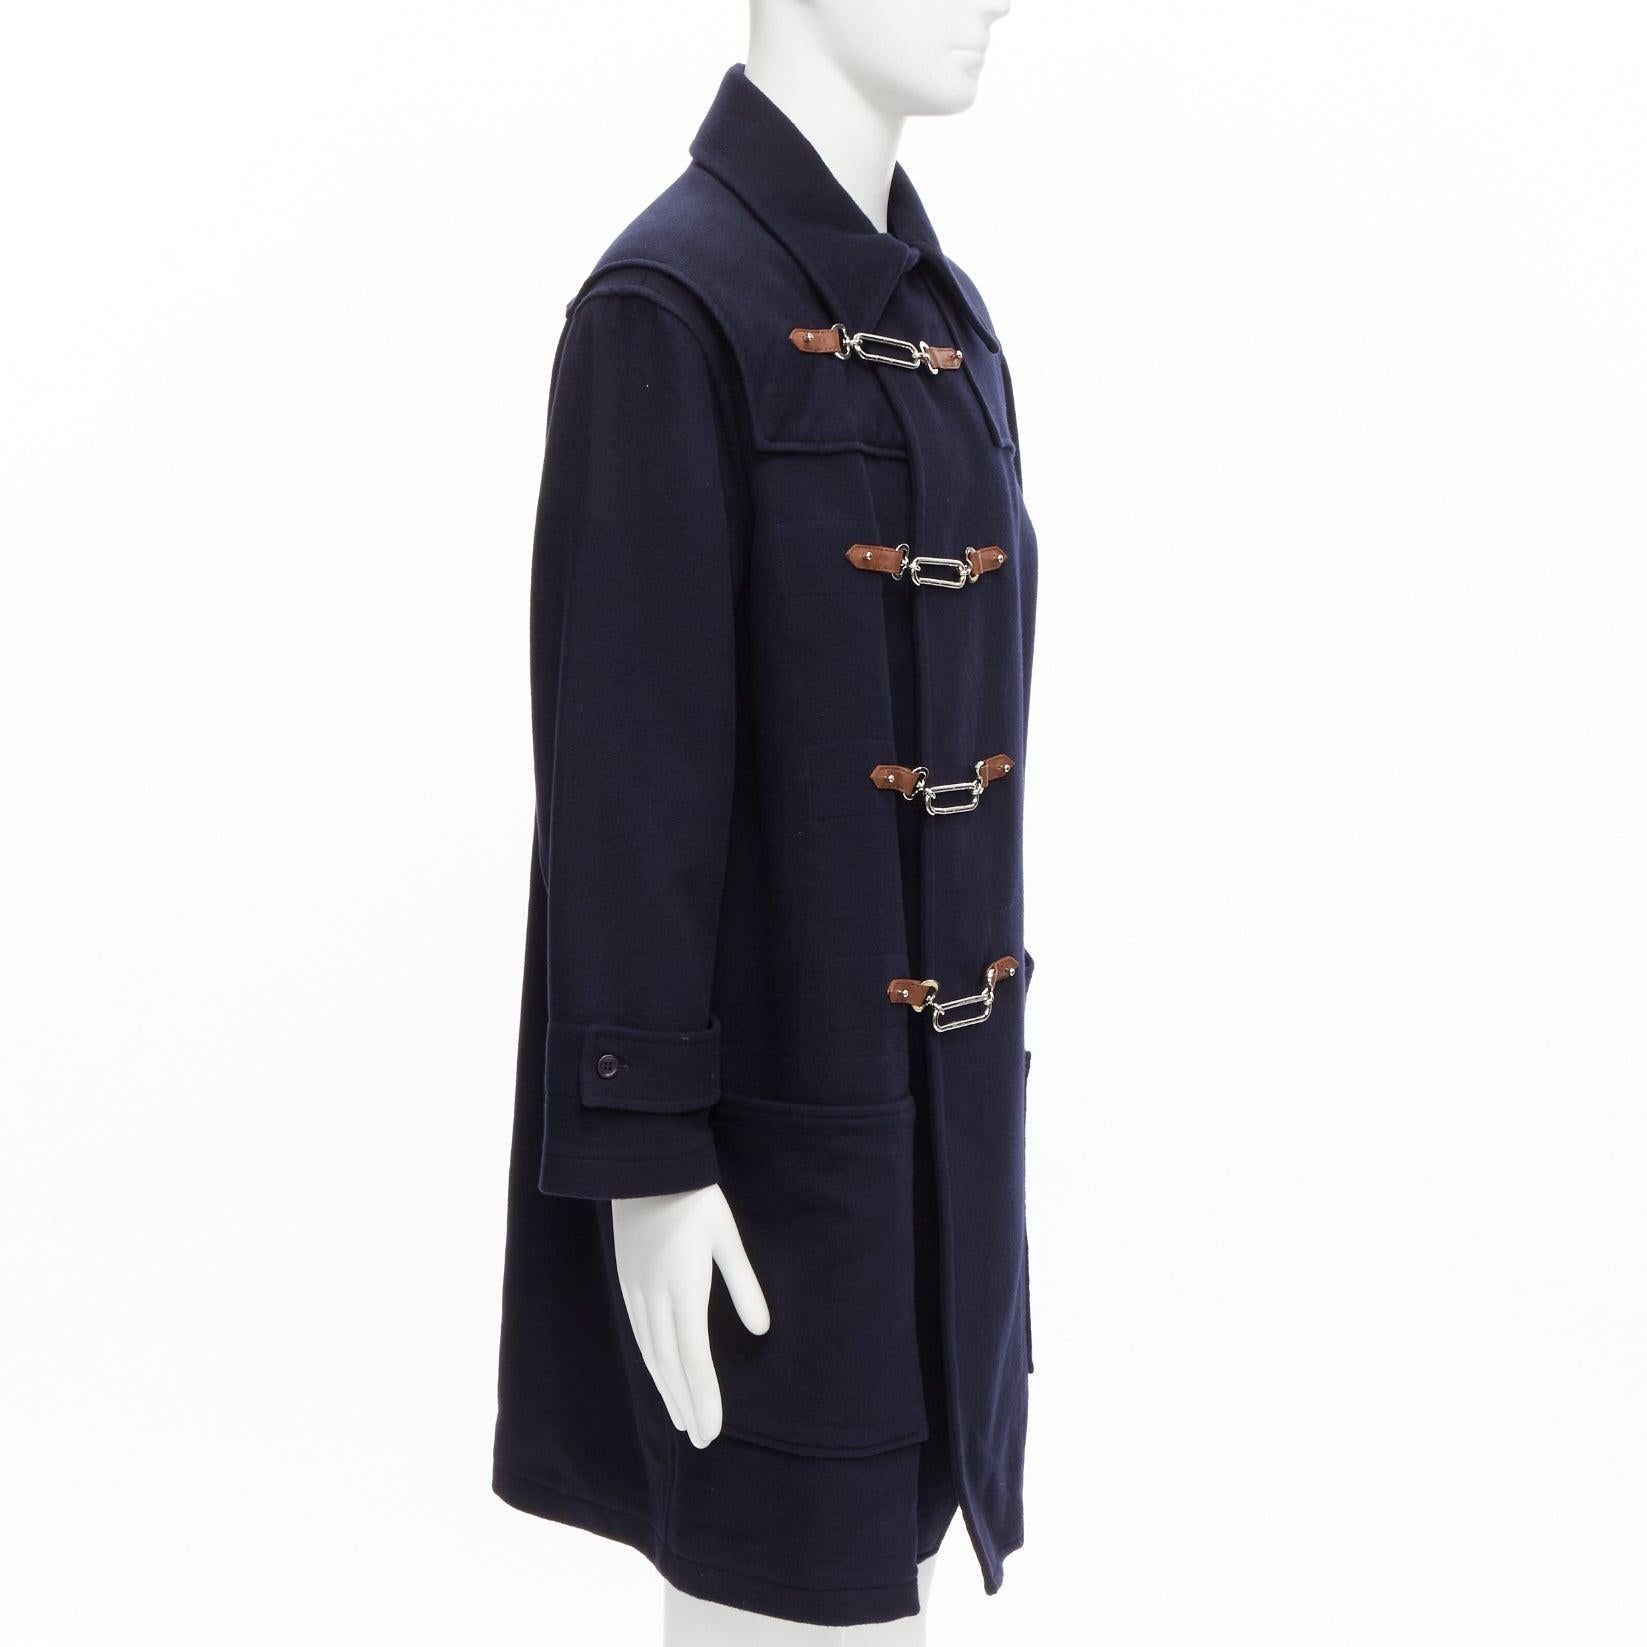 RALPH LAUREN Label Fintona 100% Wolle navy silberfarbener Mantel mit Knebelschnalle Größe 6 M Herren im Angebot